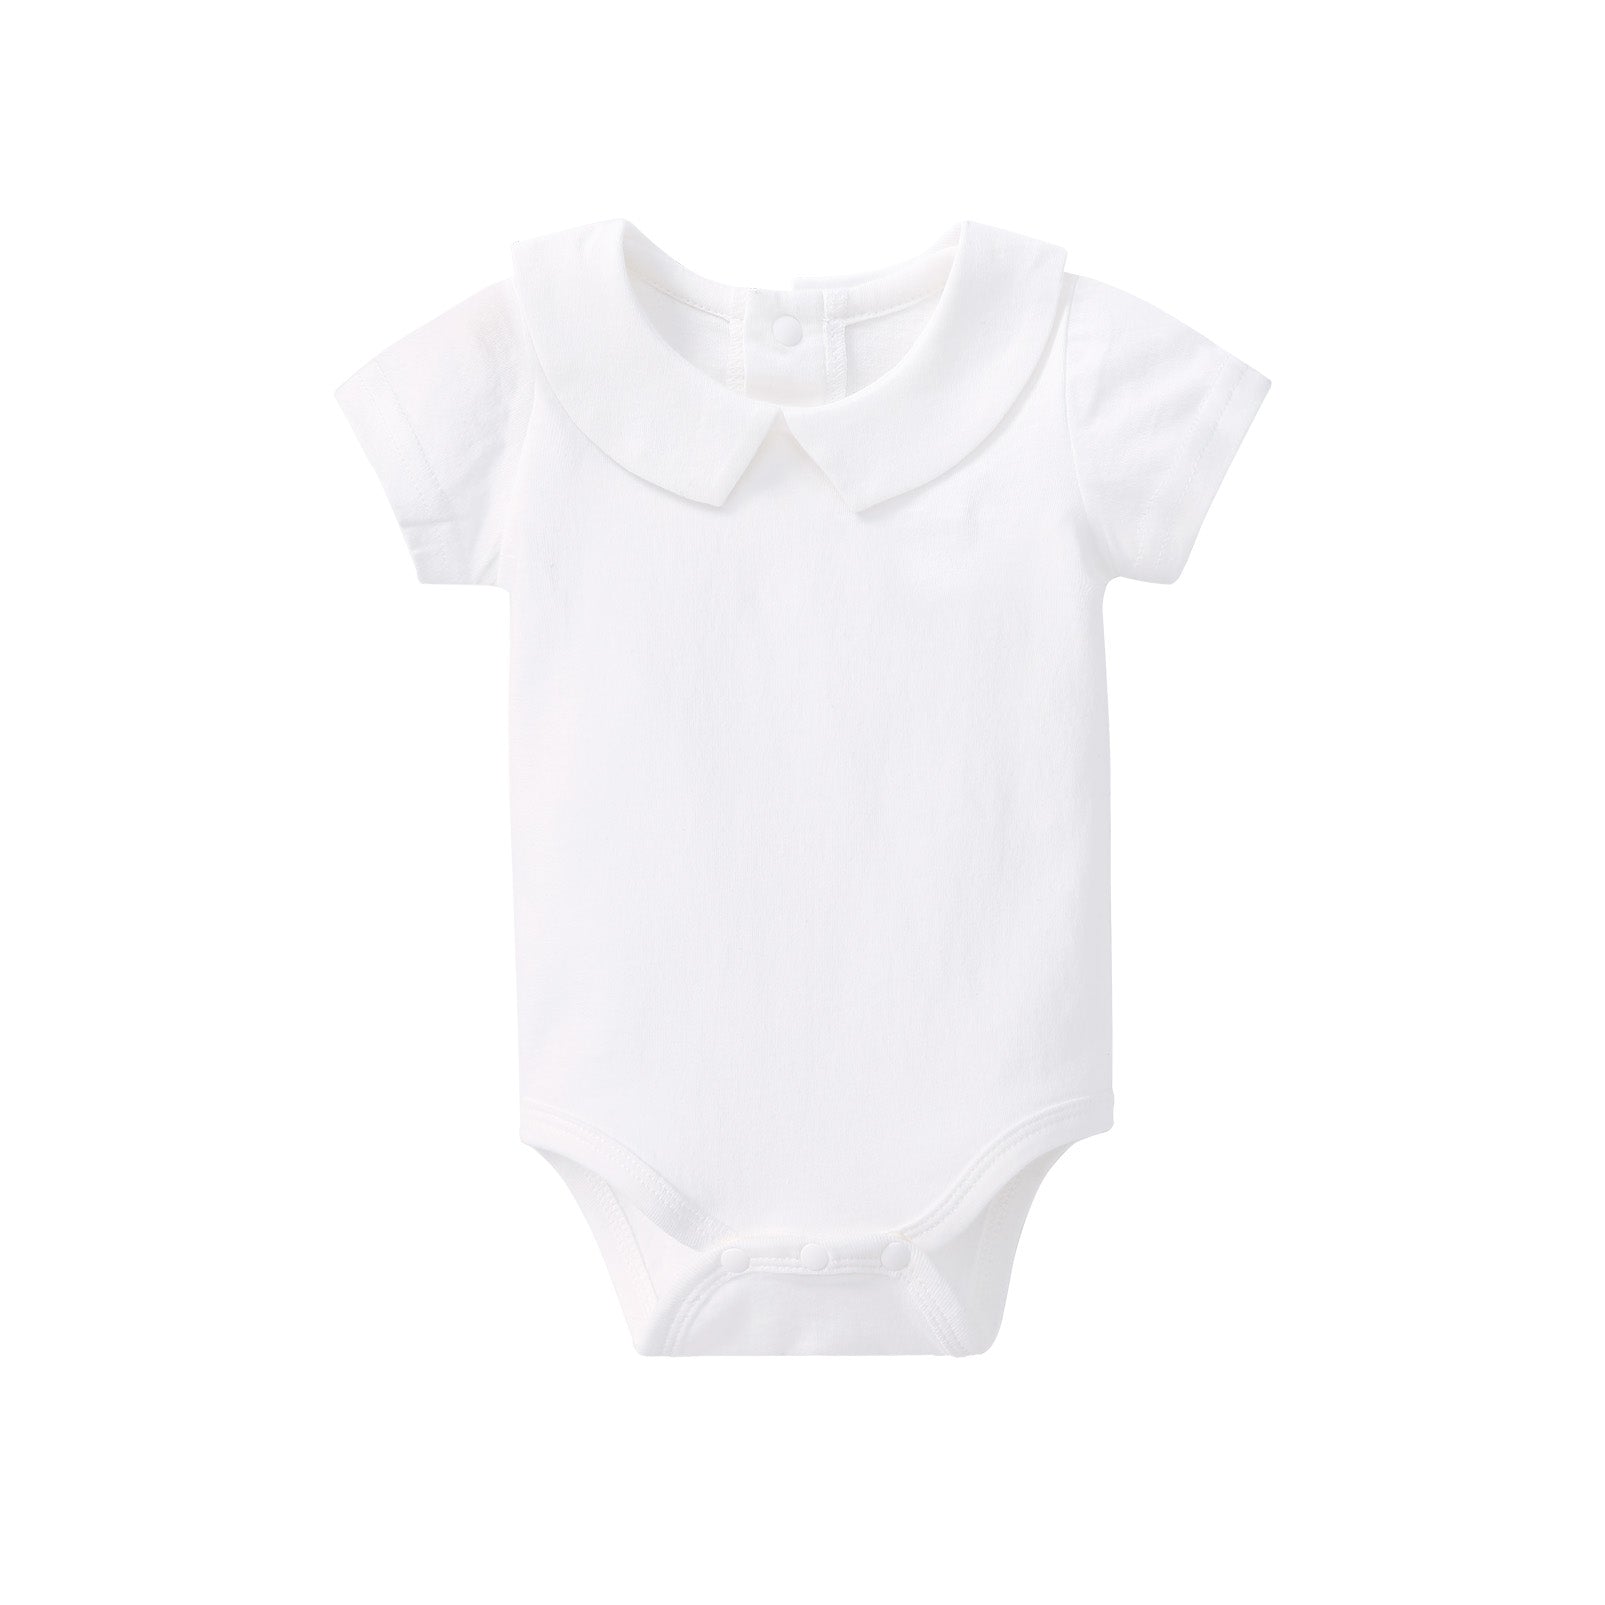 pureborn Baby Boys Girls Organic Cotton Bodysuits 0-24 Months